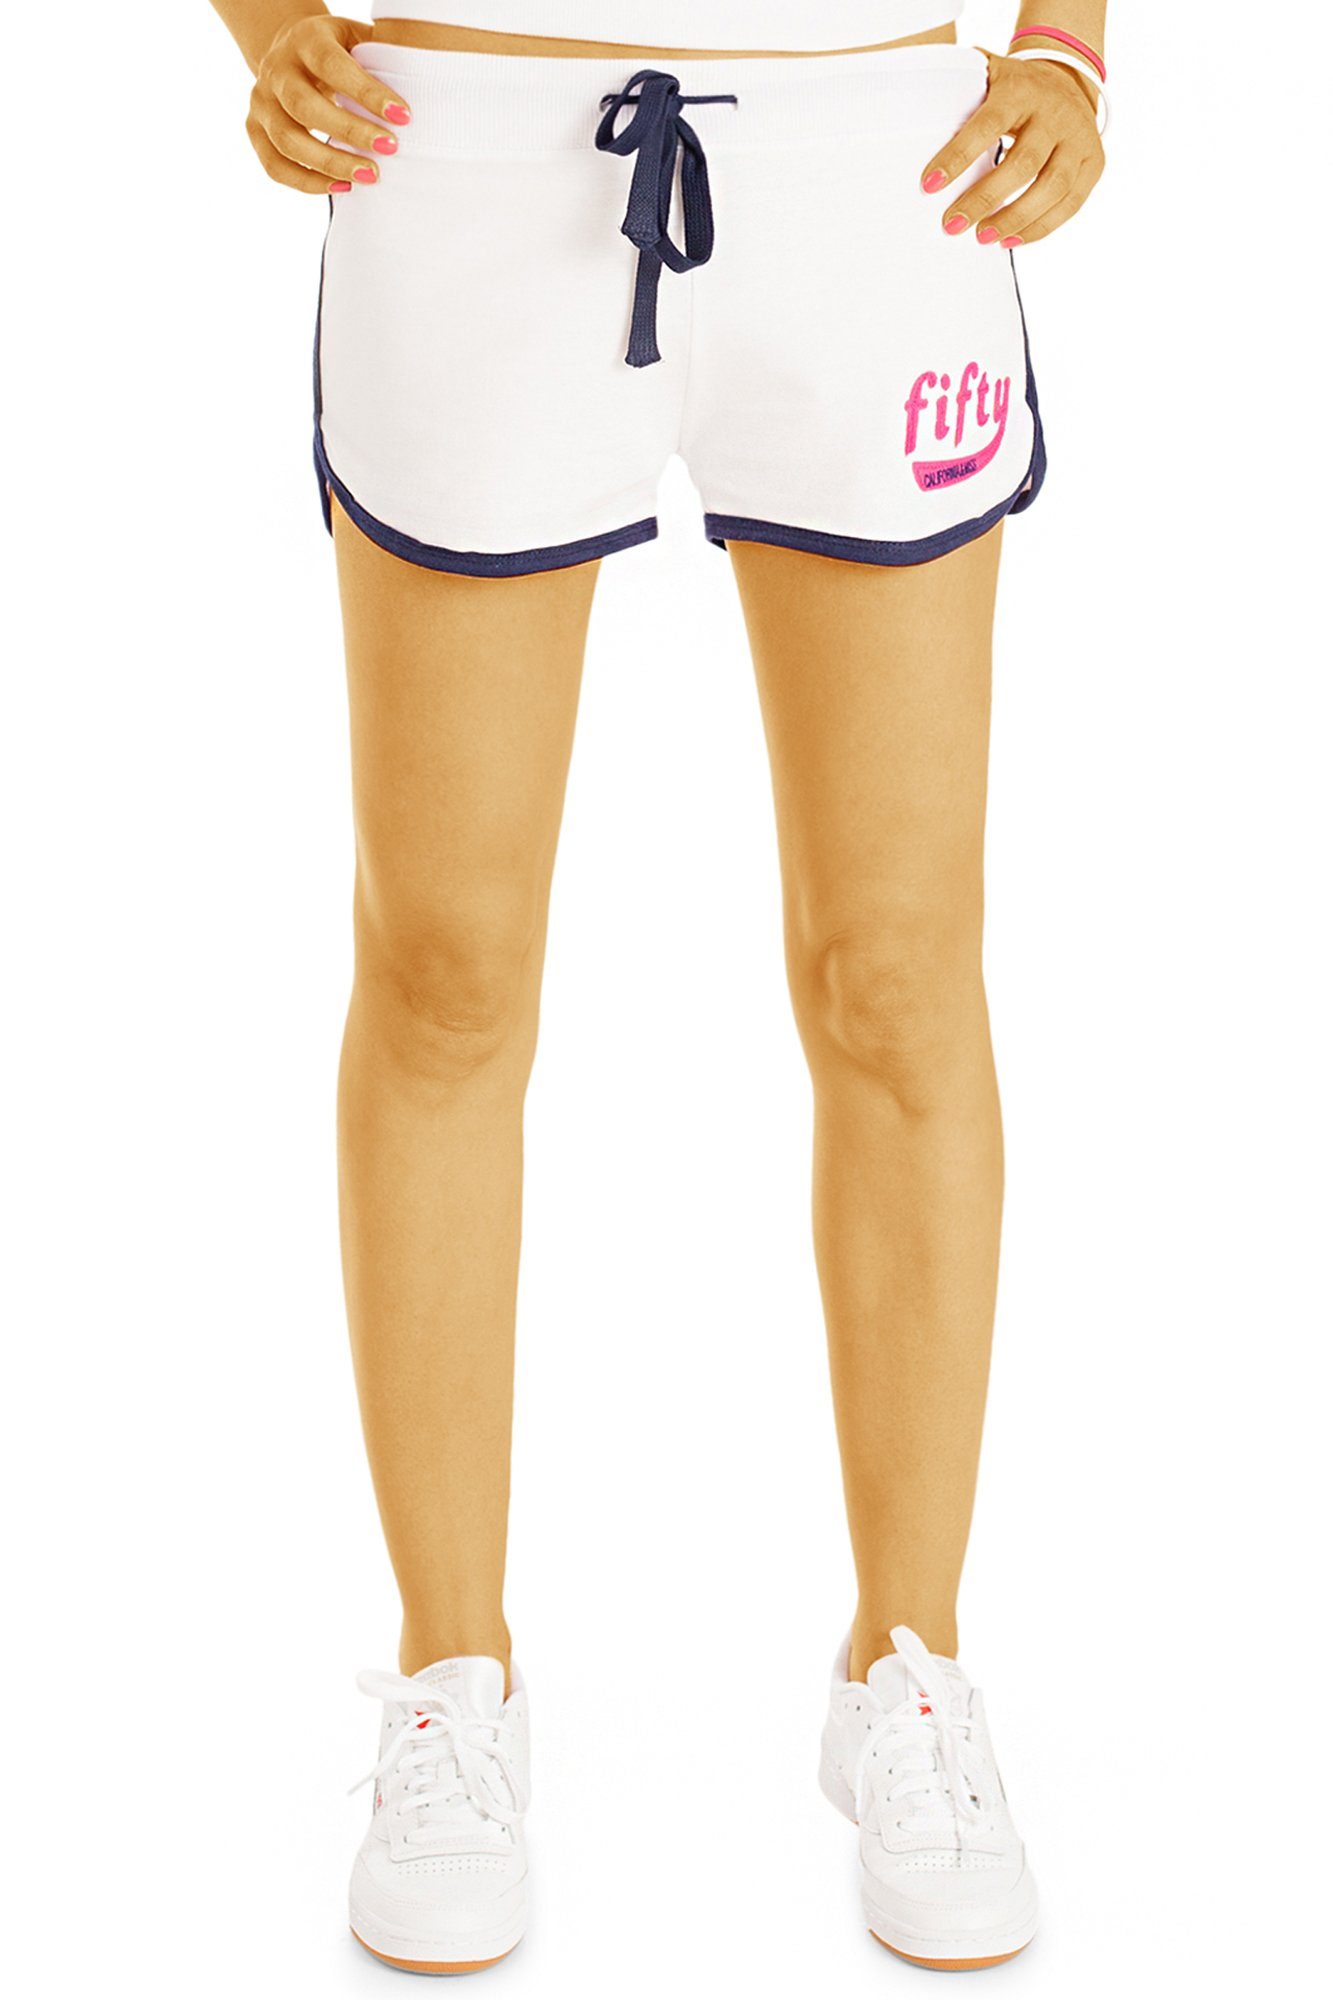 Jersey styled rose Damen - Pyjamashorts Hose Shorts Bund Shorts mit mit j64k kurze elastischem Stretch-Anteil, be Relaxed